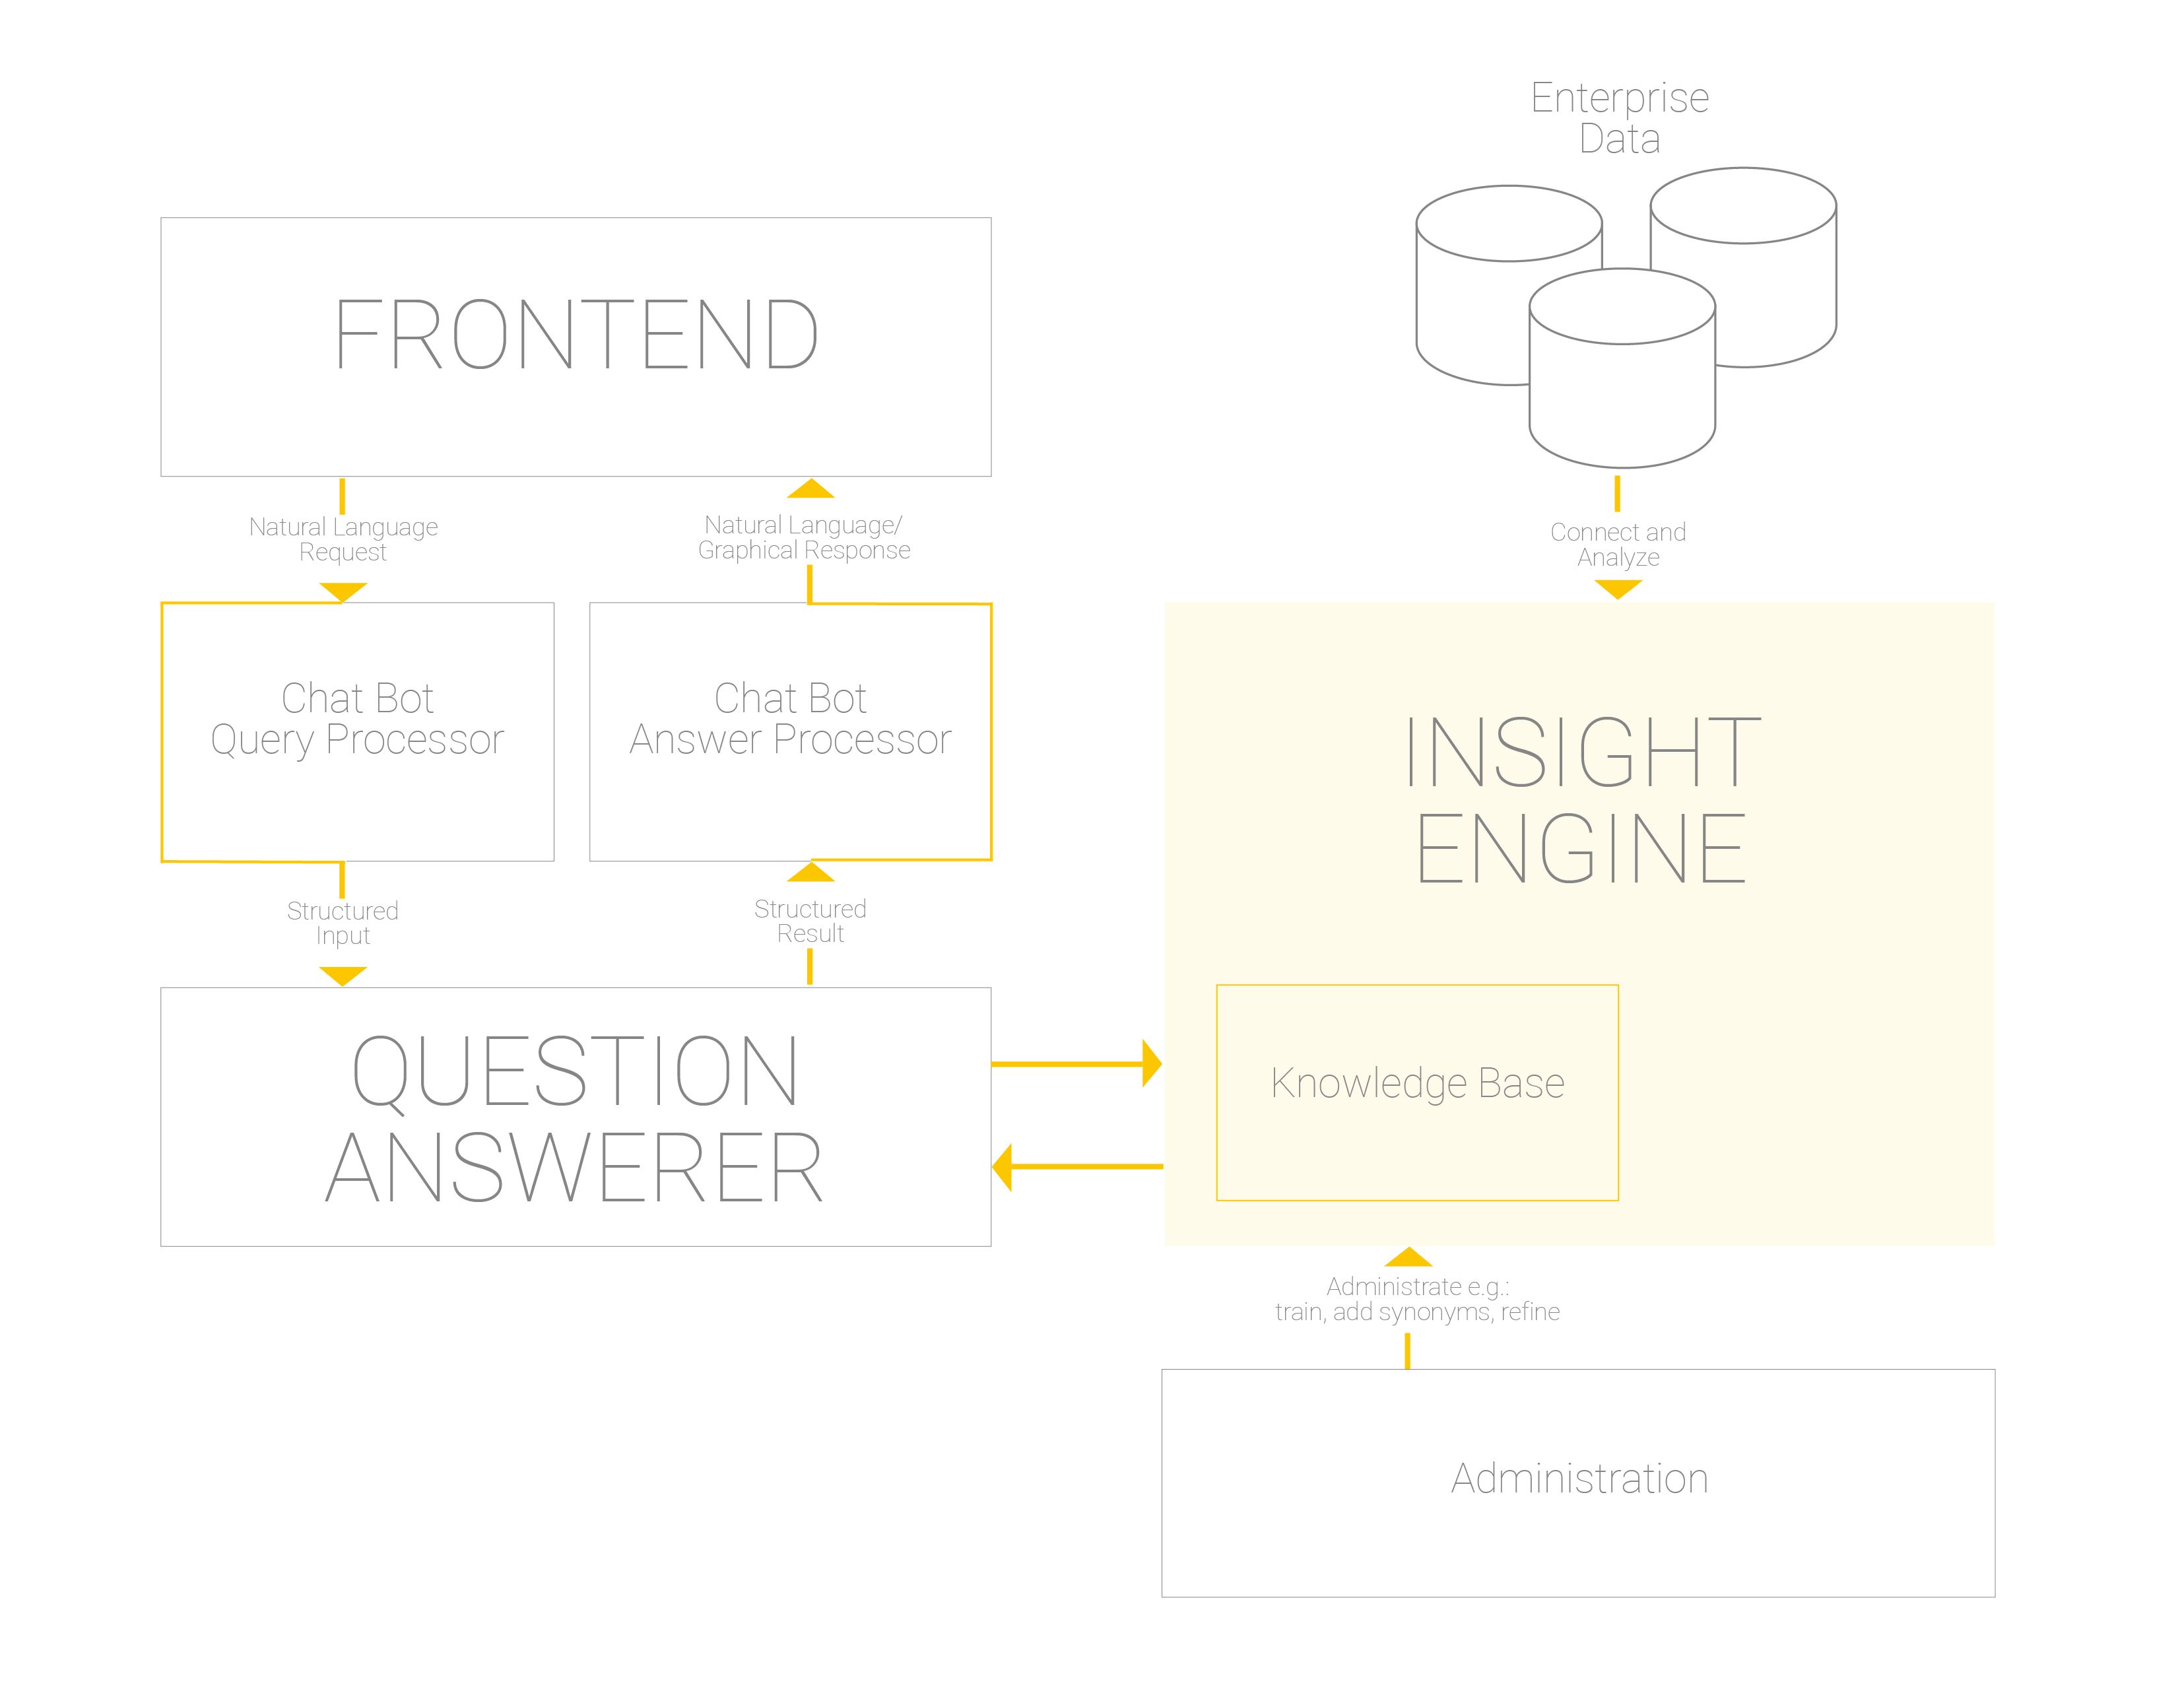 Vereinfachte Architektur einer Konversationsanwendung mit einer Insight Engine